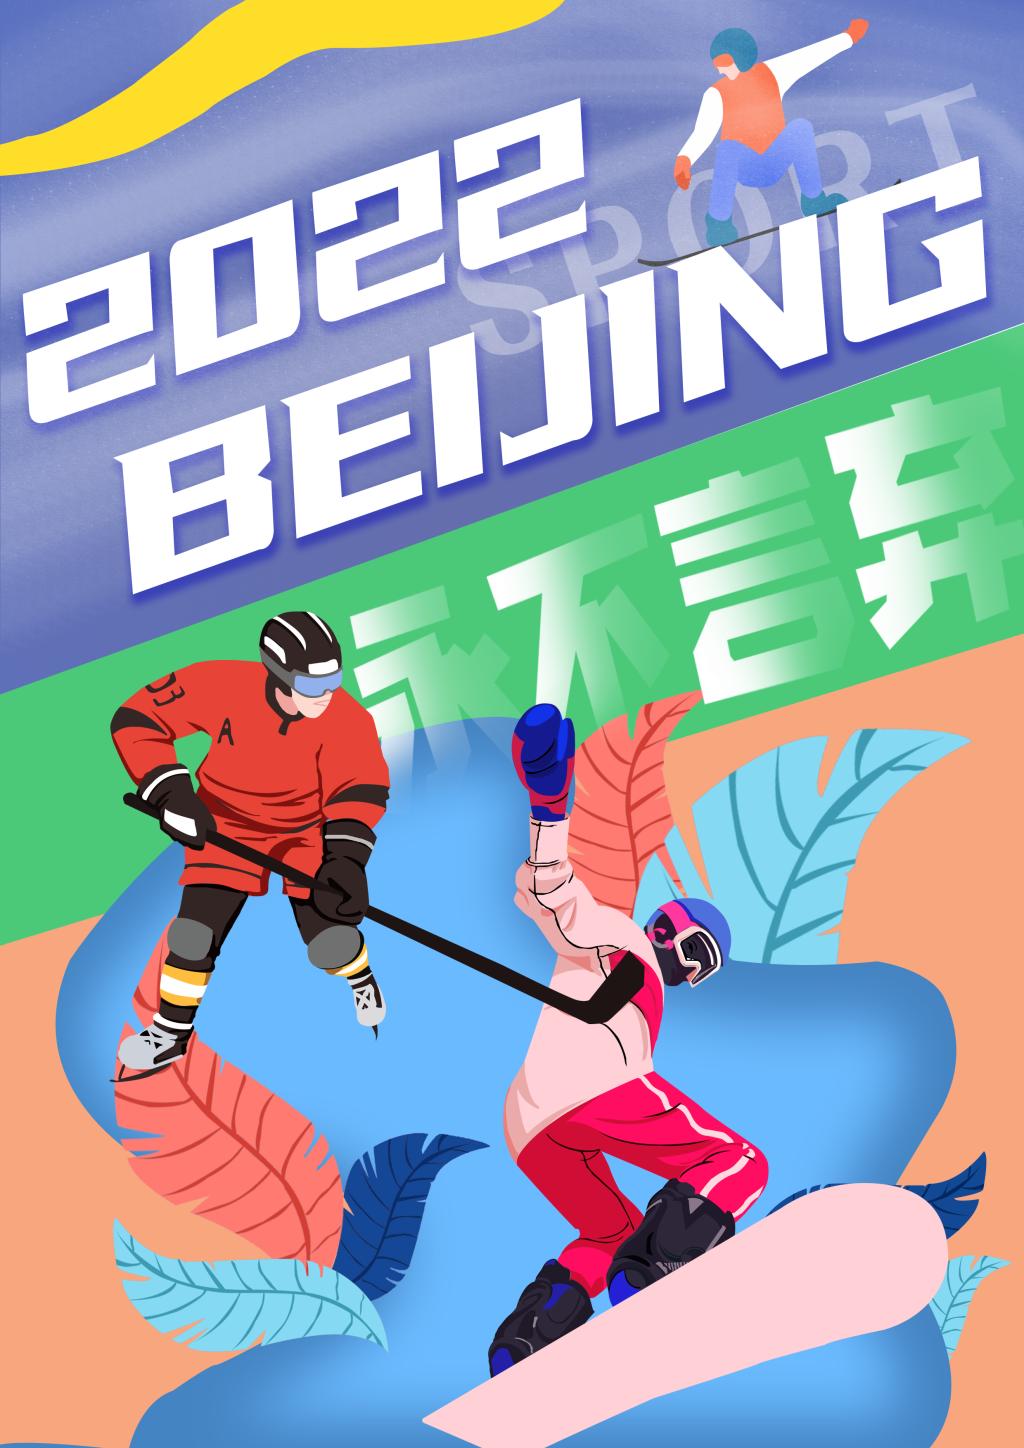 北京冬奥会主题海报图片